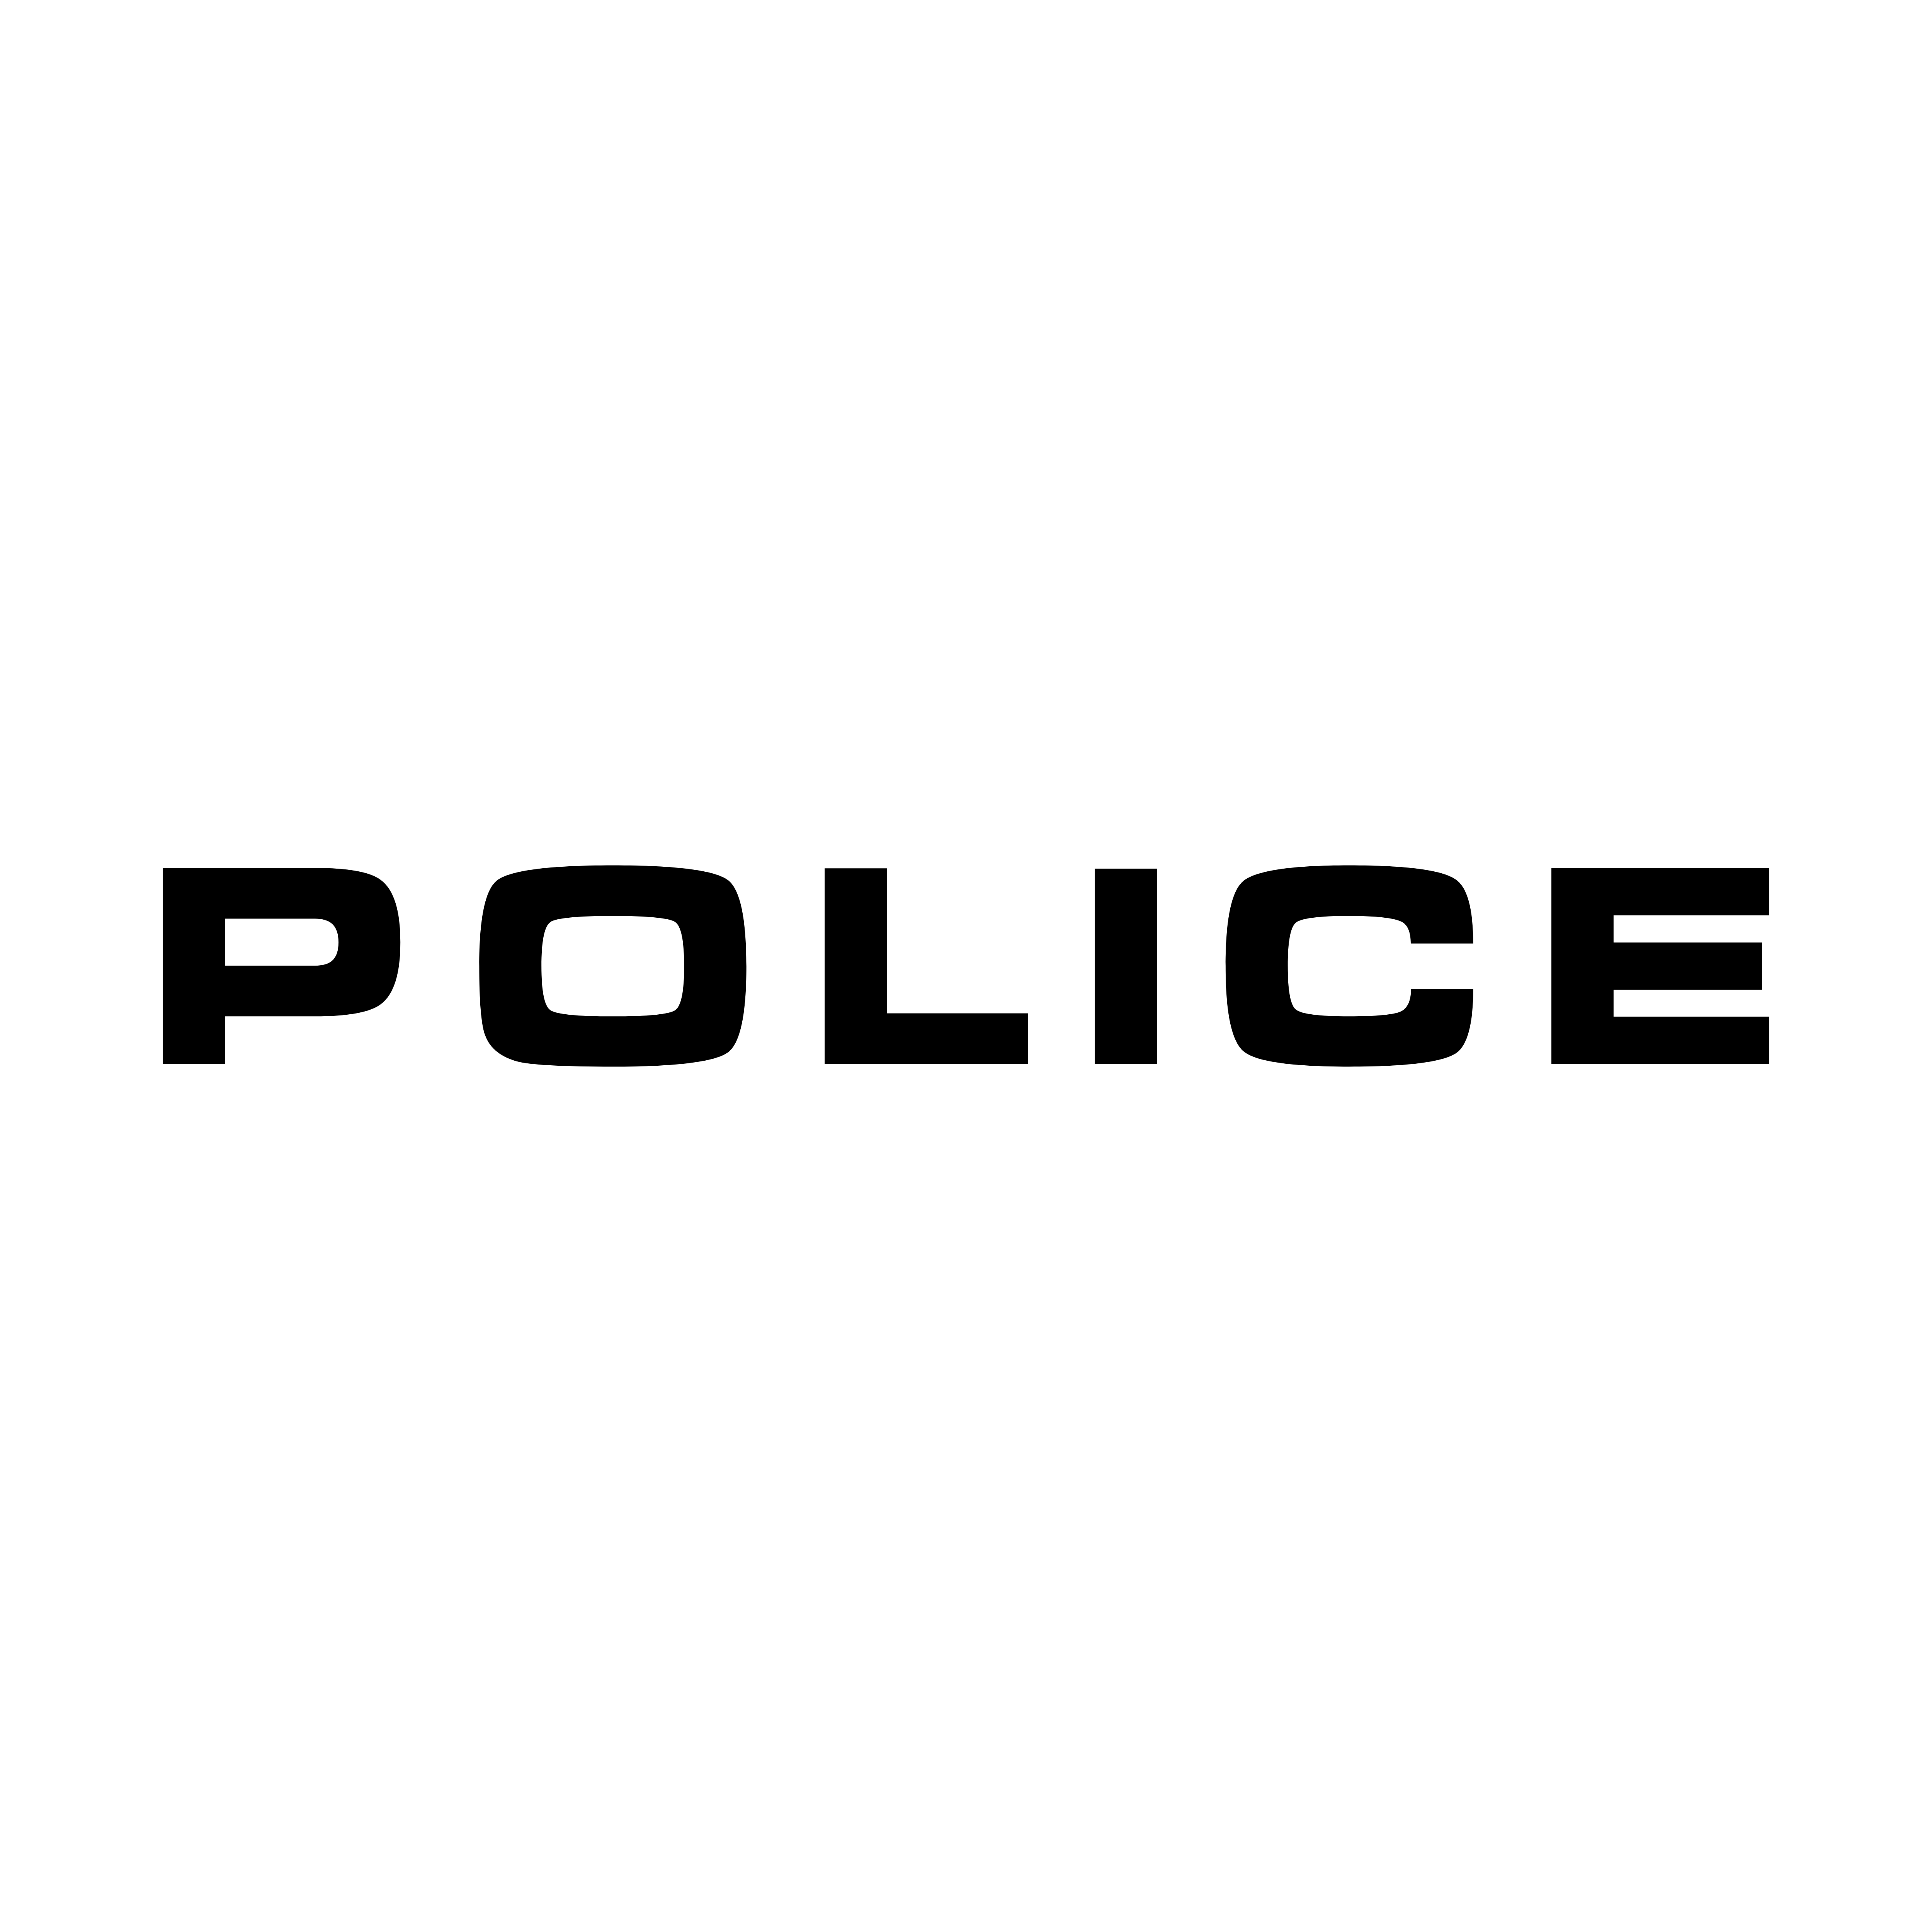 Police Car Logo